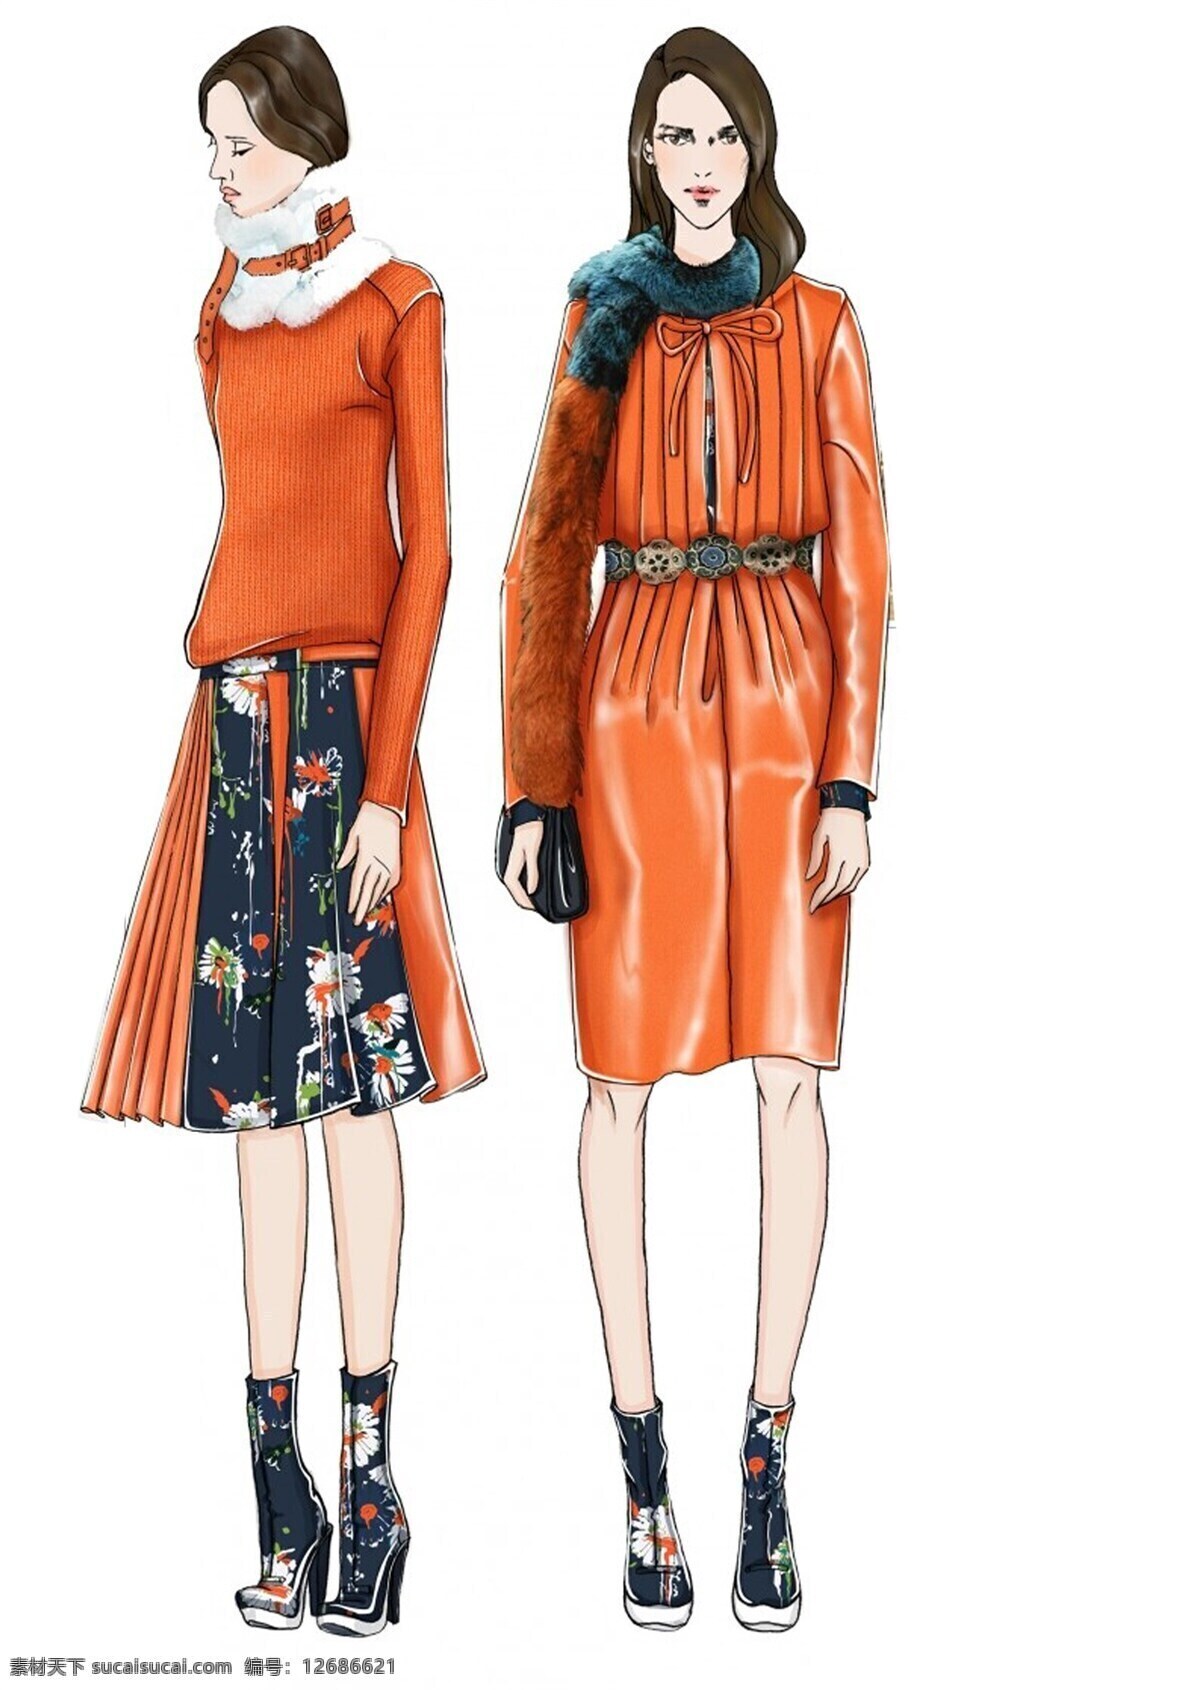 橙色裙子 服饰 服装设计 女装 深蓝色鞋子 端庄 橙色 连衣裙 效果图